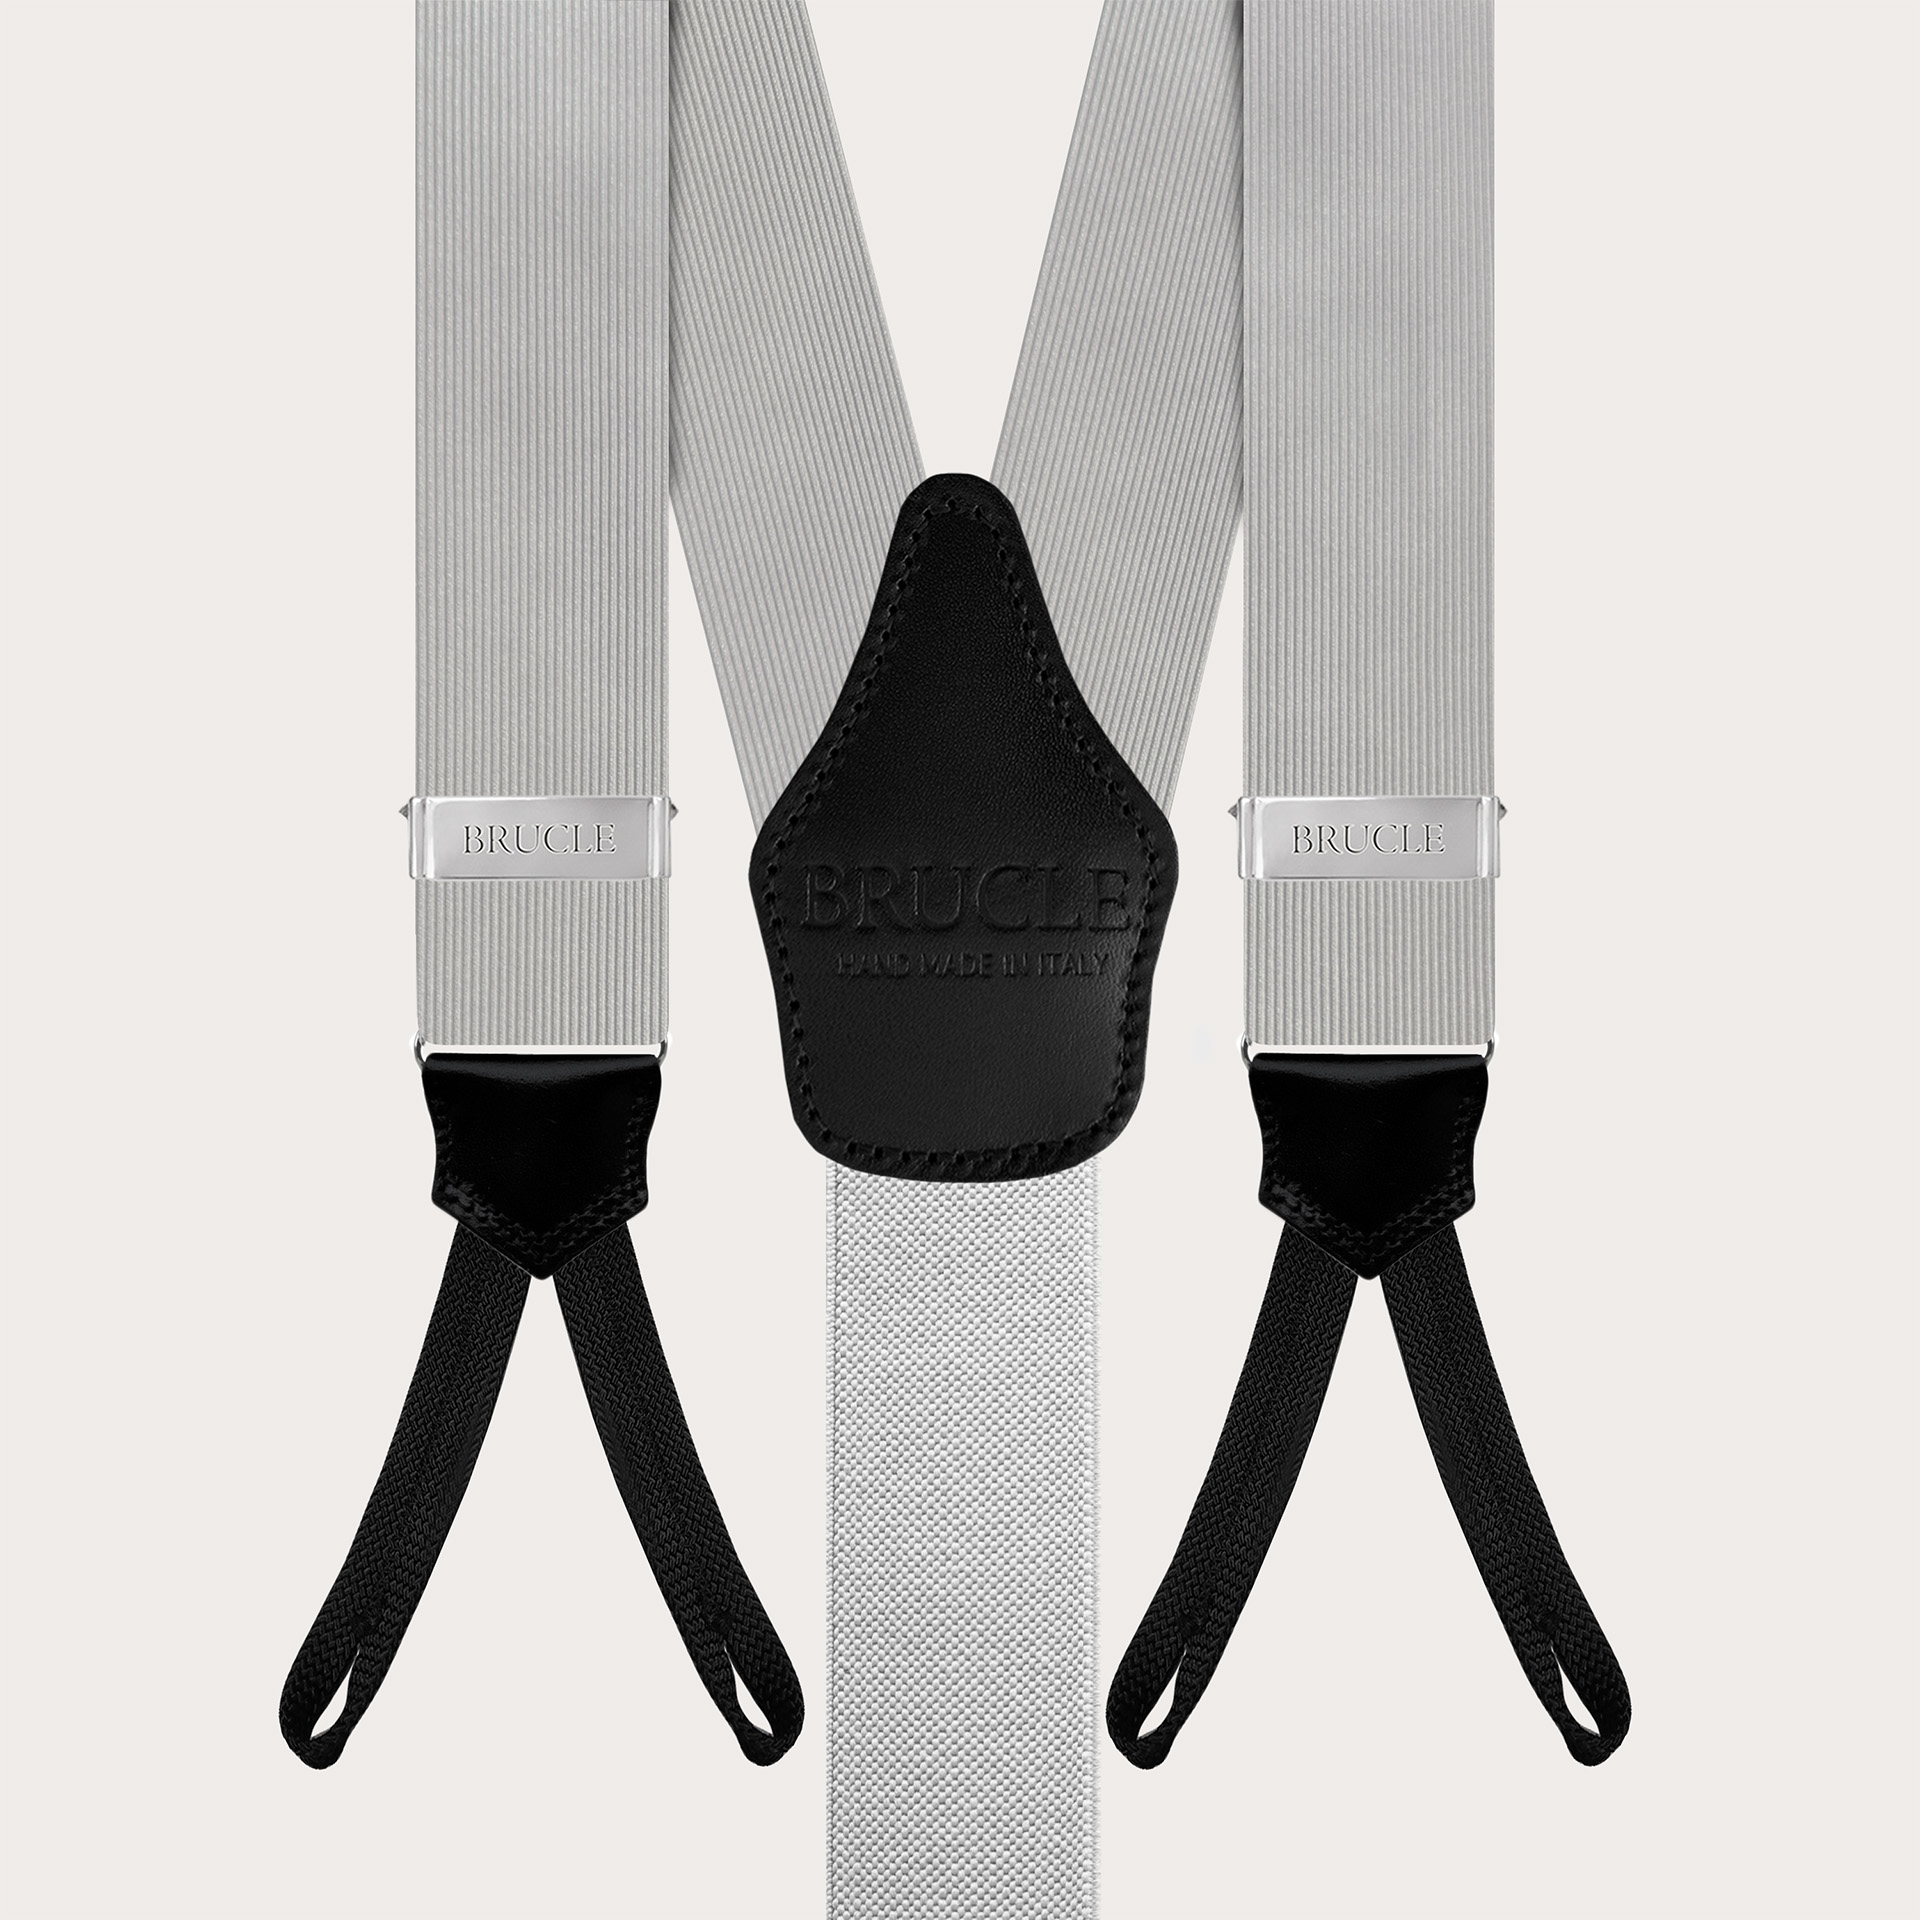 Formal Y-shape suspenders with braid runners, grey